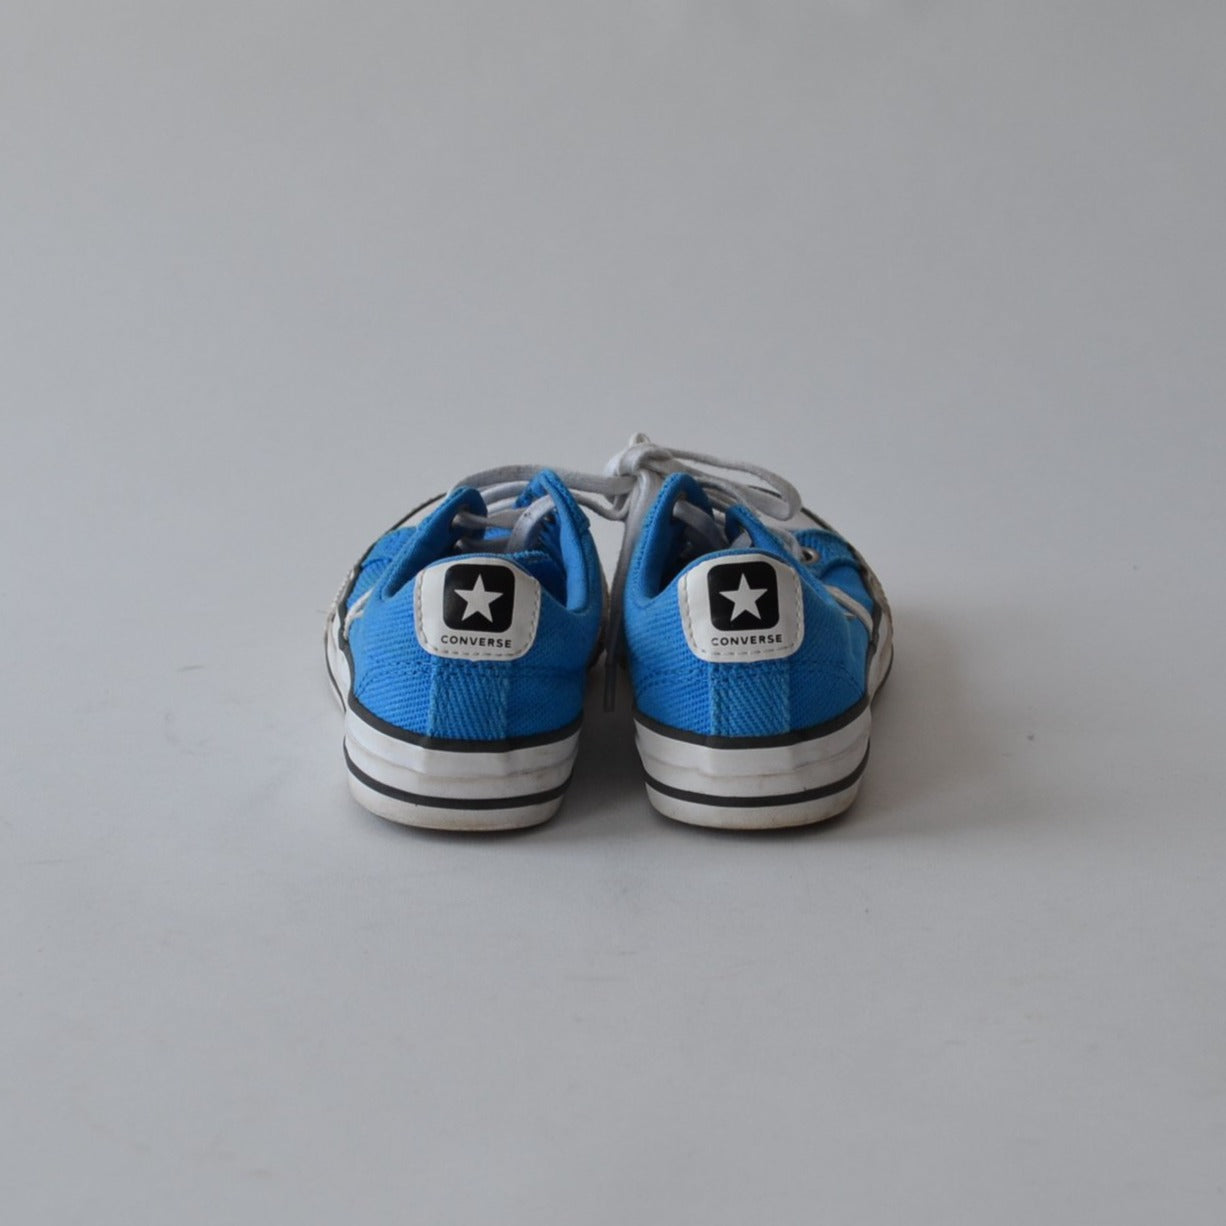 Converse Blue Canvas Trainers Shoe Size 12 (jr)